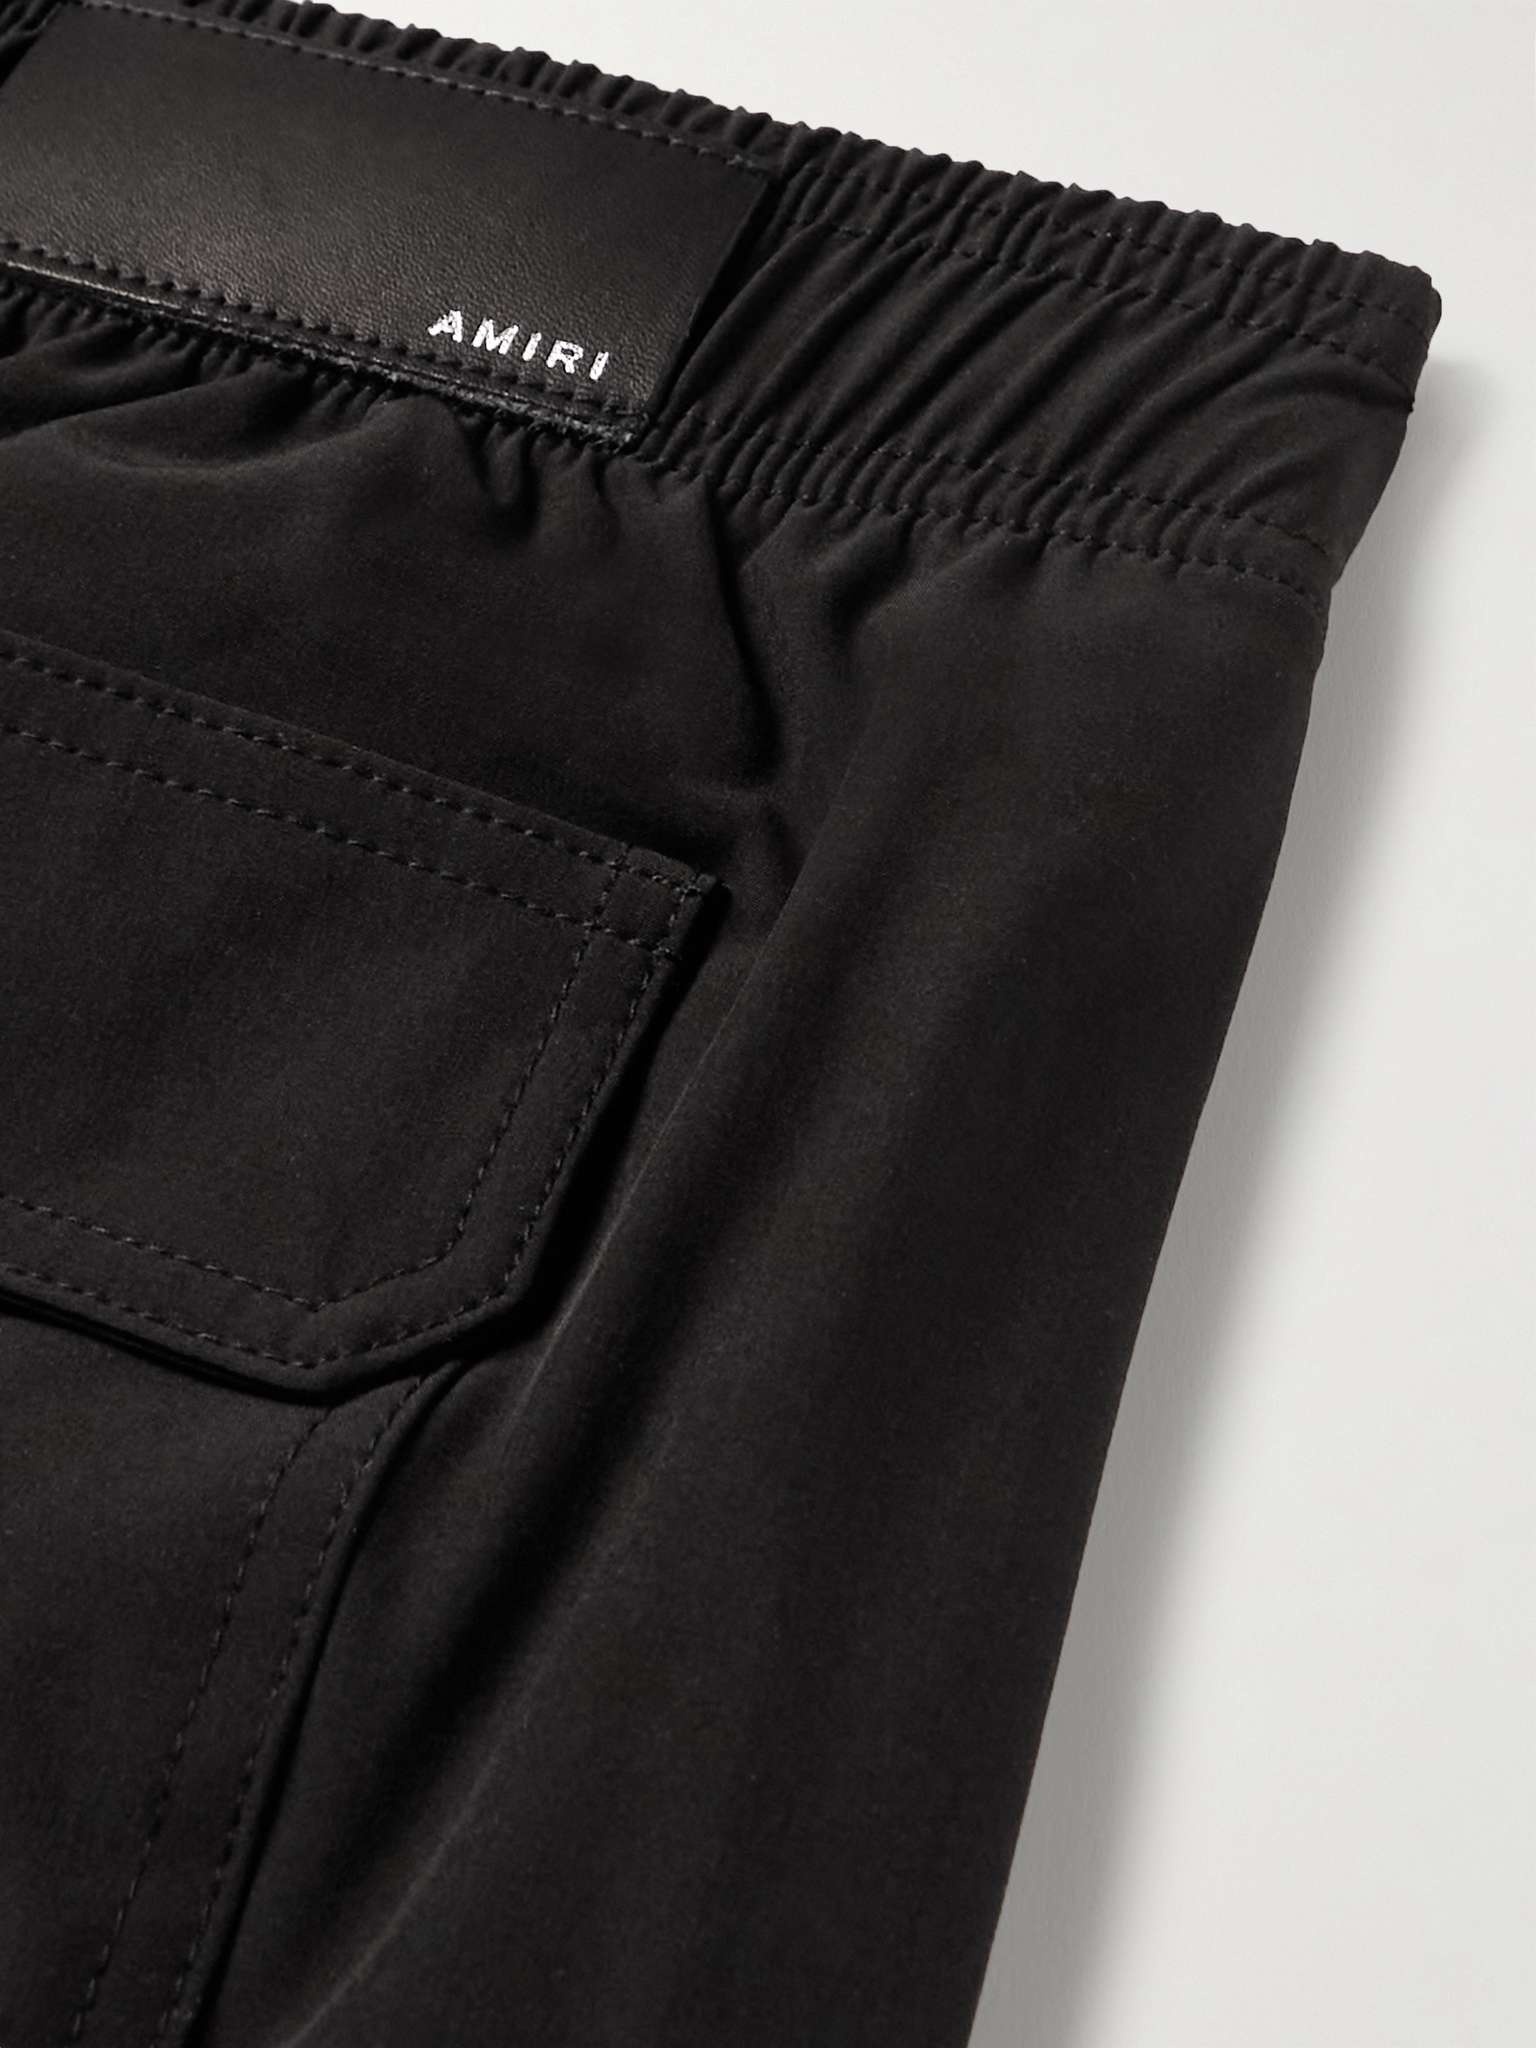 AMIRI logo-print swim shorts - Black